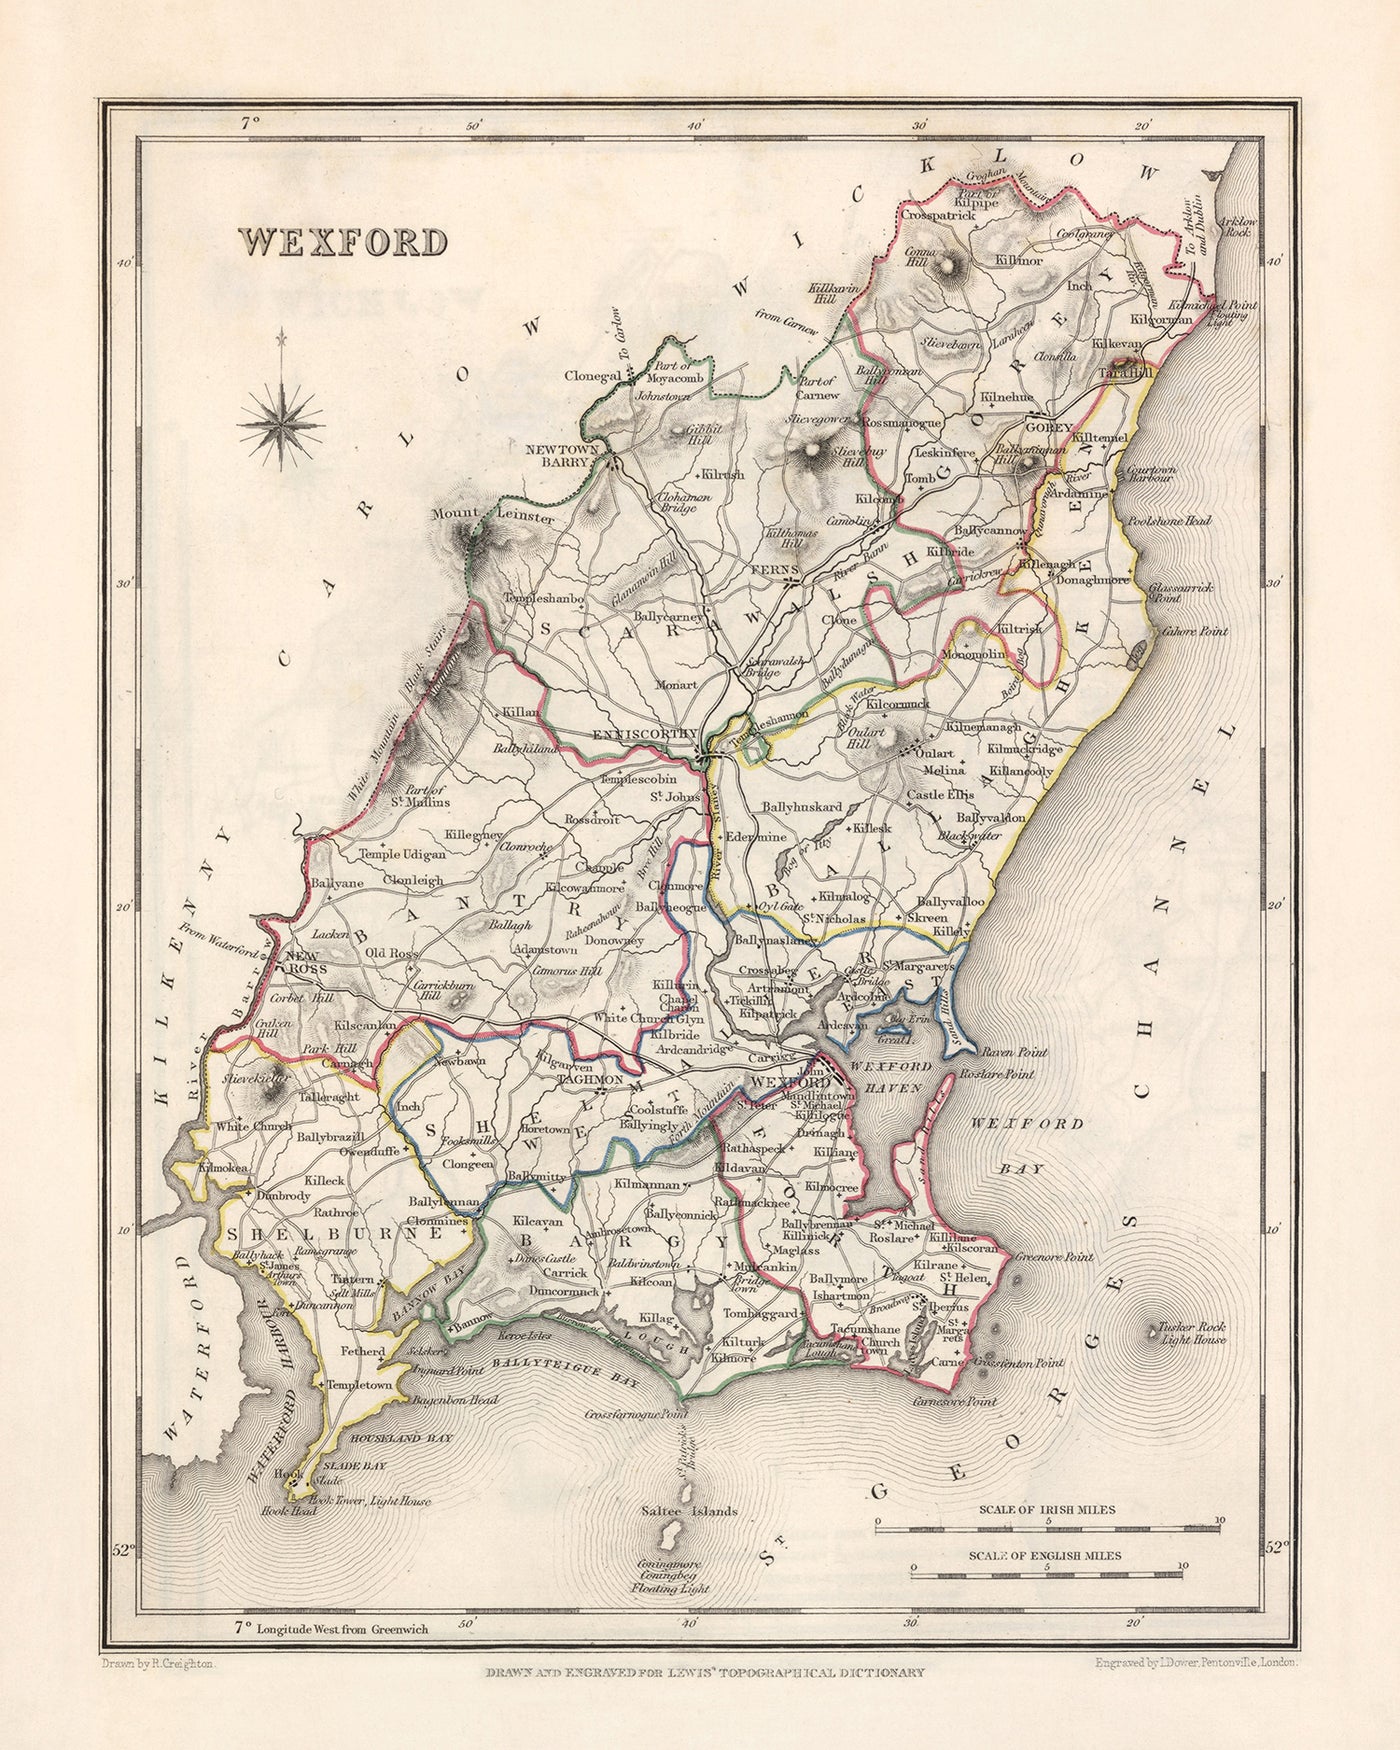 Mapa antiguo del condado de Wexford por Samuel Lewis, 1844: Enniscorthy, New Ross, Gorey, helechos y características históricas